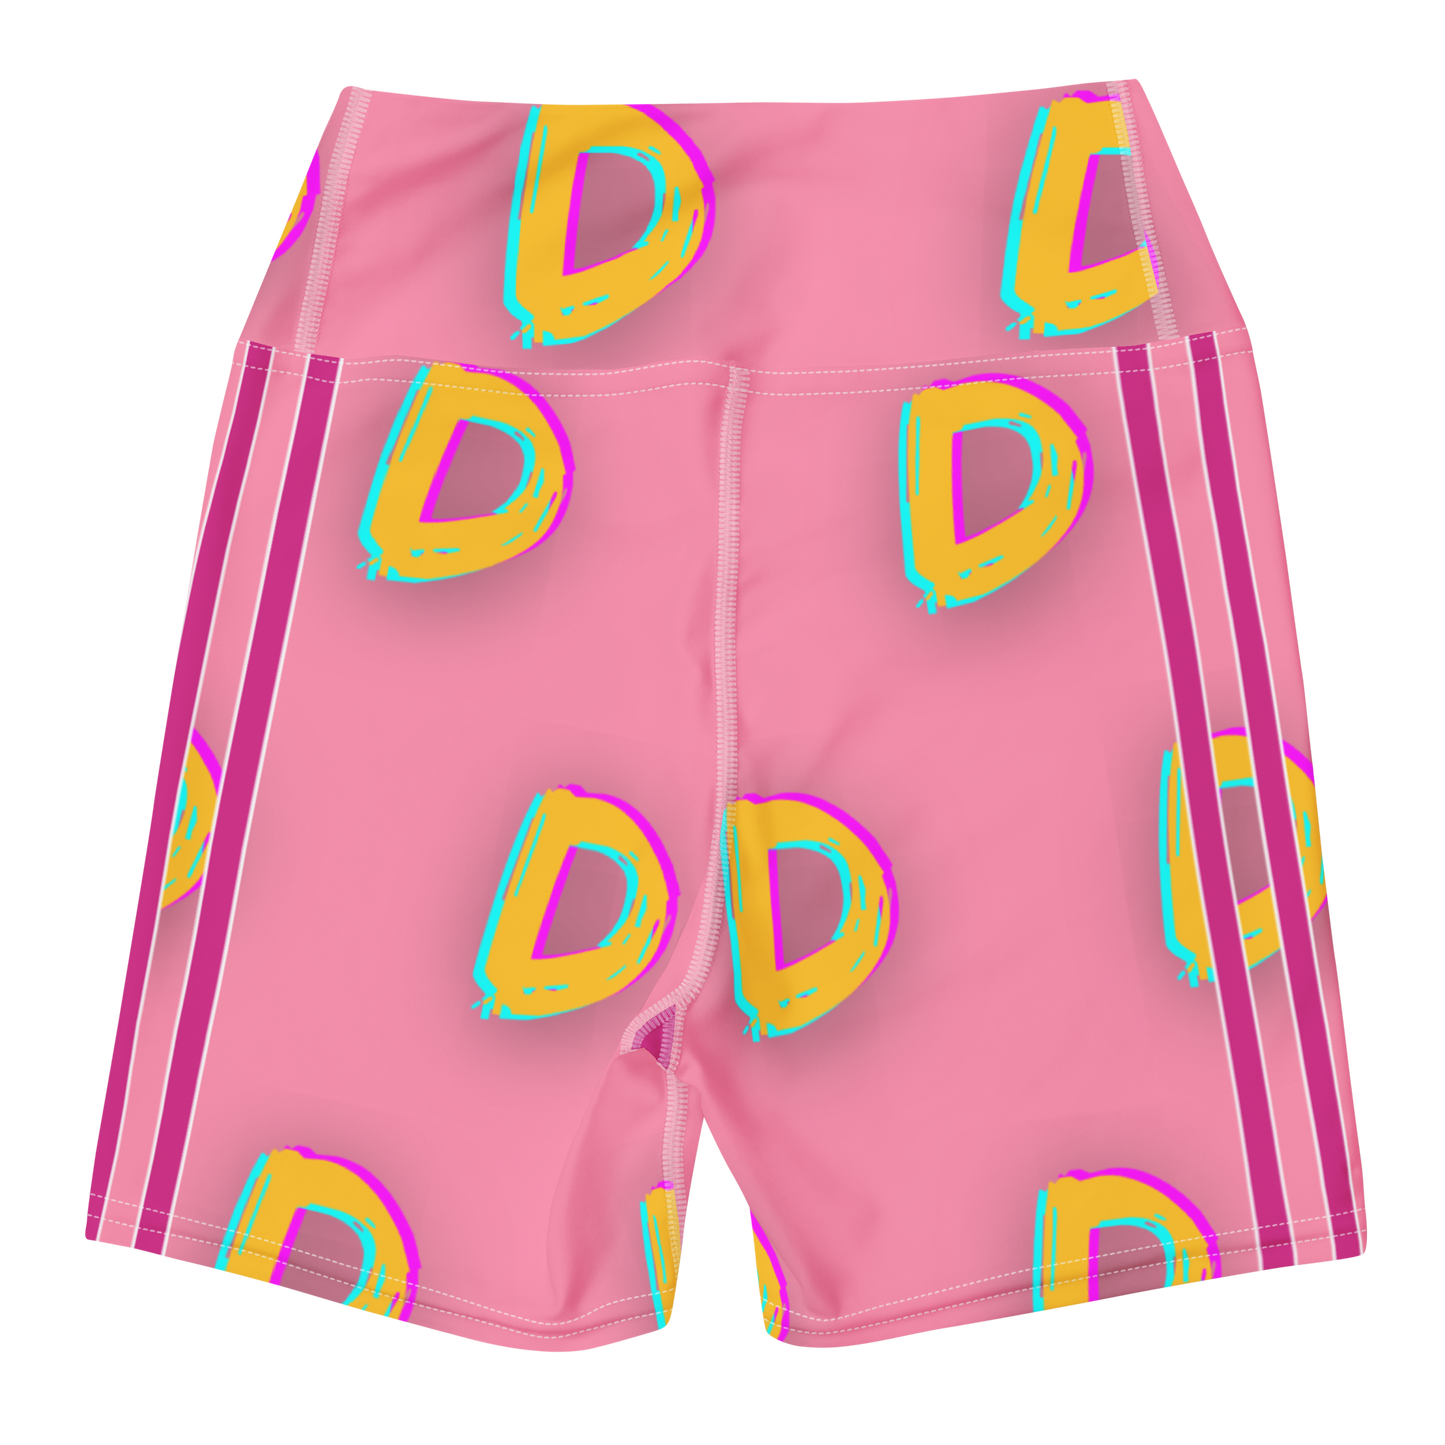 DDDDDDD Yoga Shorts